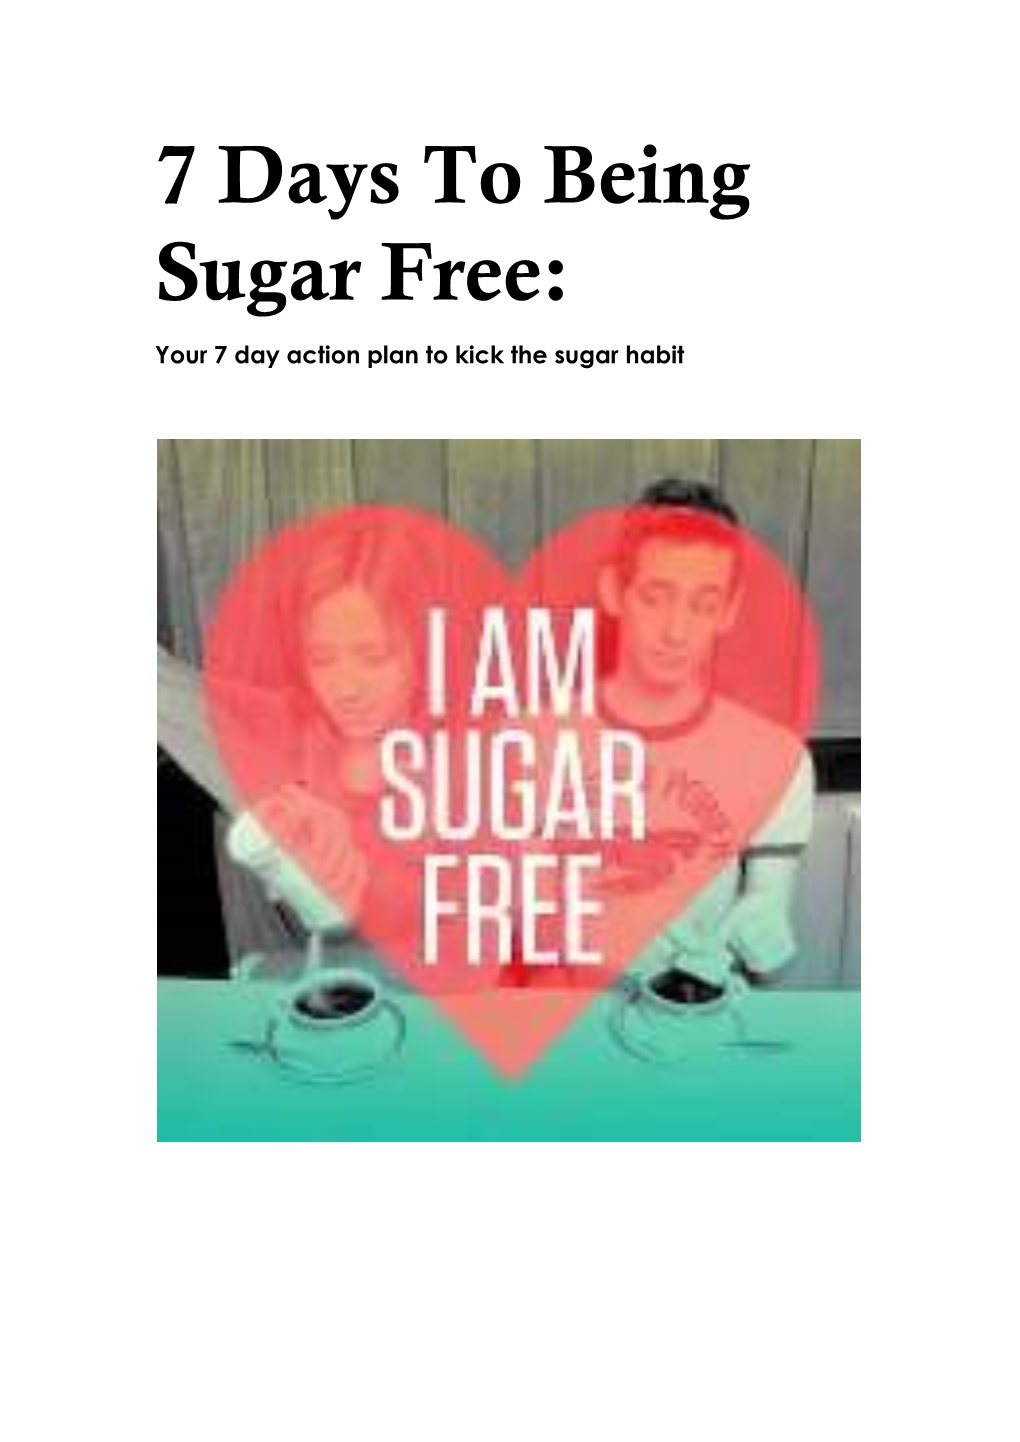 7 Days to Being Sugar Free